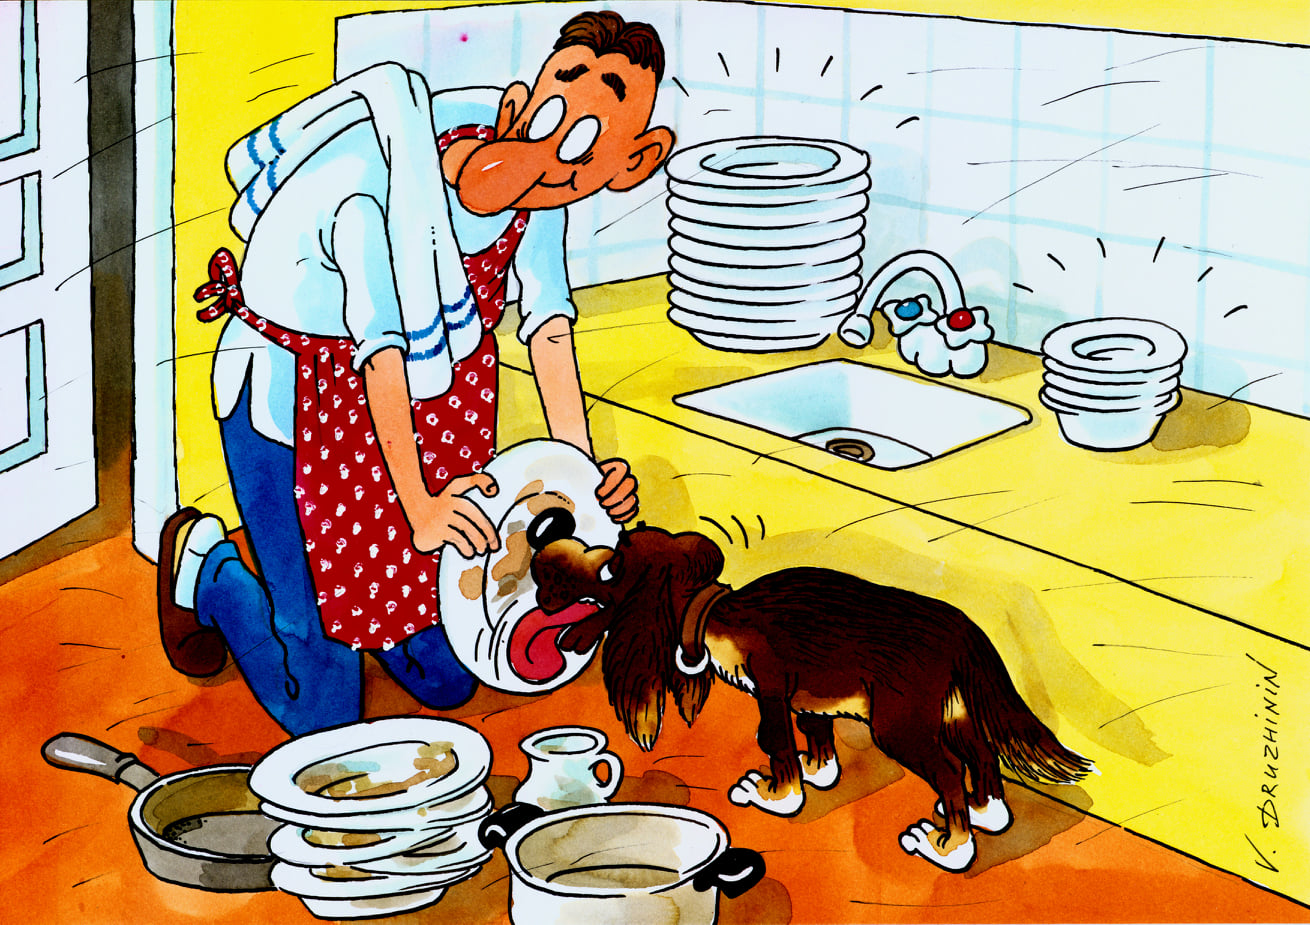 Хозяин трахает черную прислугу на кухне пока она моет посуду